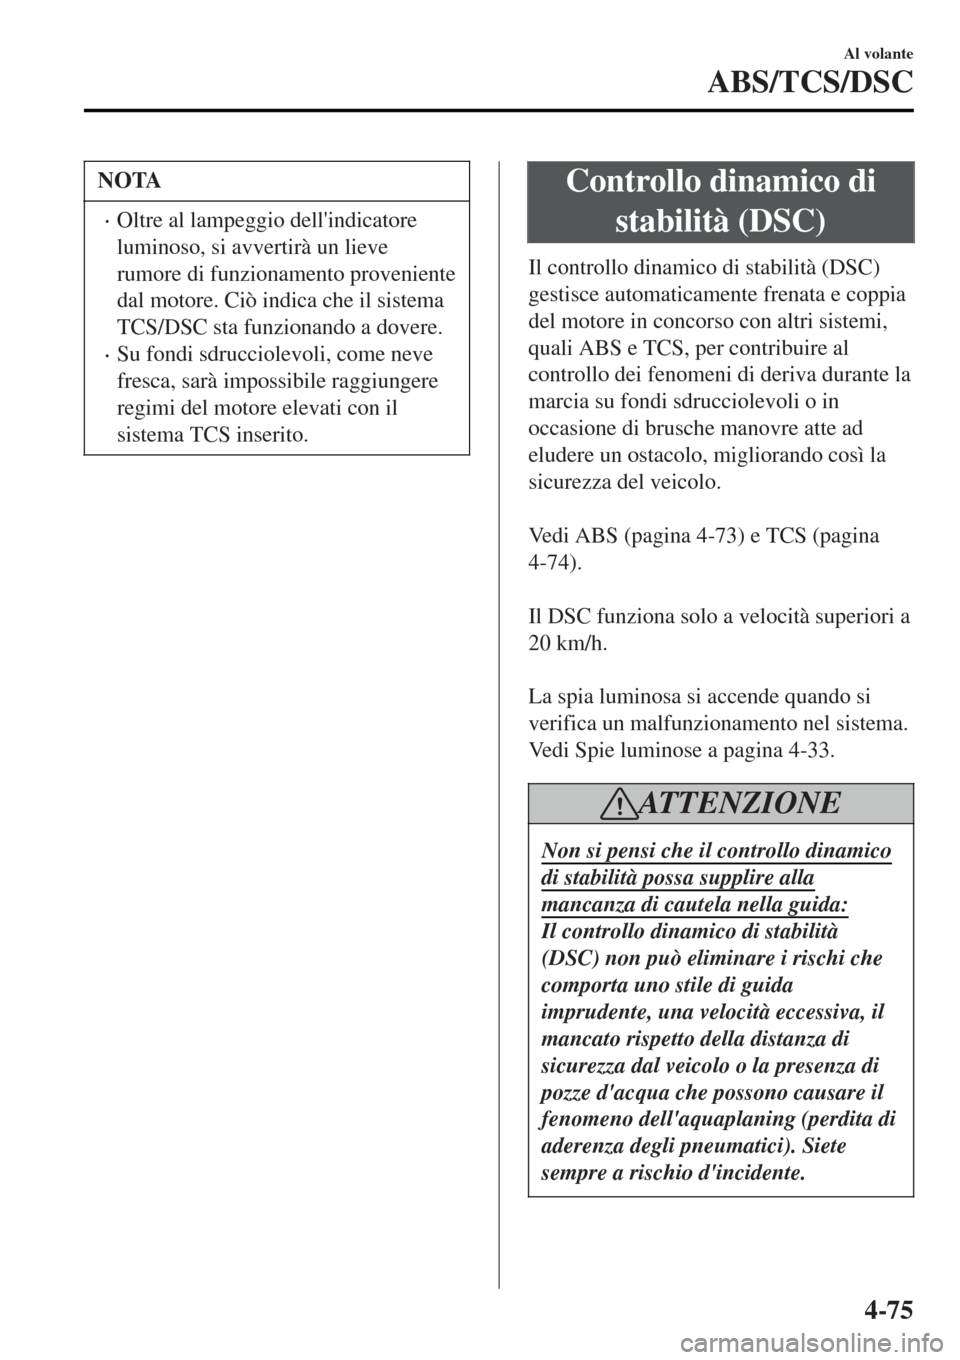 MAZDA MODEL MX-5 2015  Manuale del proprietario (in Italian) NOTA
•Oltre al lampeggio dellindicatore
luminoso, si avvertirà un lieve
rumore di funzionamento proveniente
dal motore. Ciò indica che il sistema
TCS/DSC sta funzionando a dovere.
•Su fondi sdr